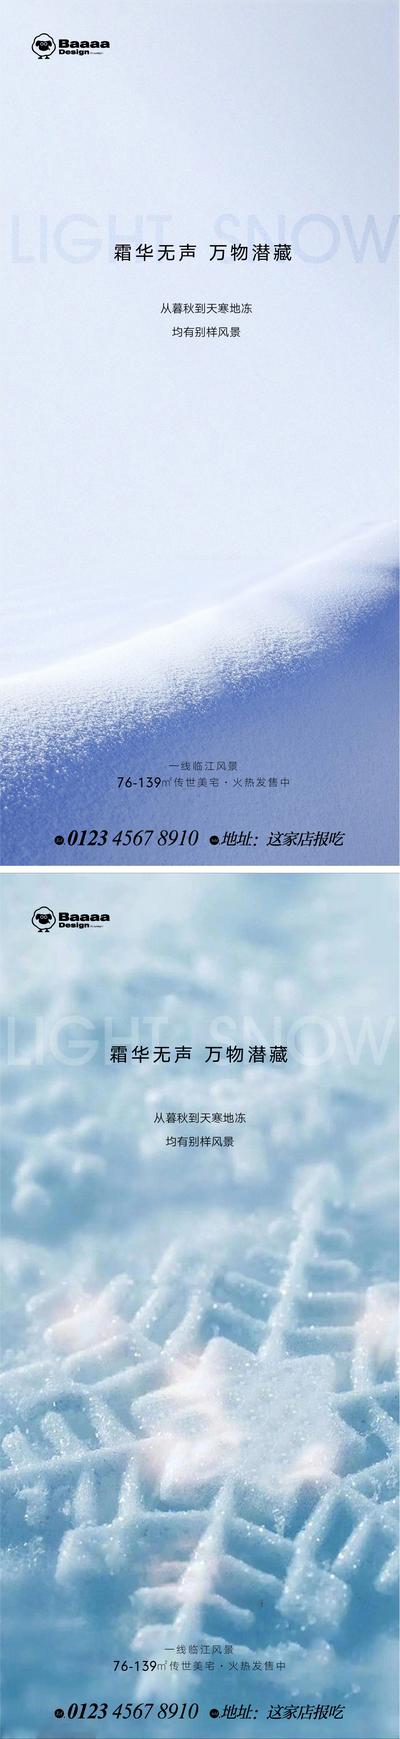 南门网 广告 地产 节气 小雪 大雪 温情 走心 实景 照片